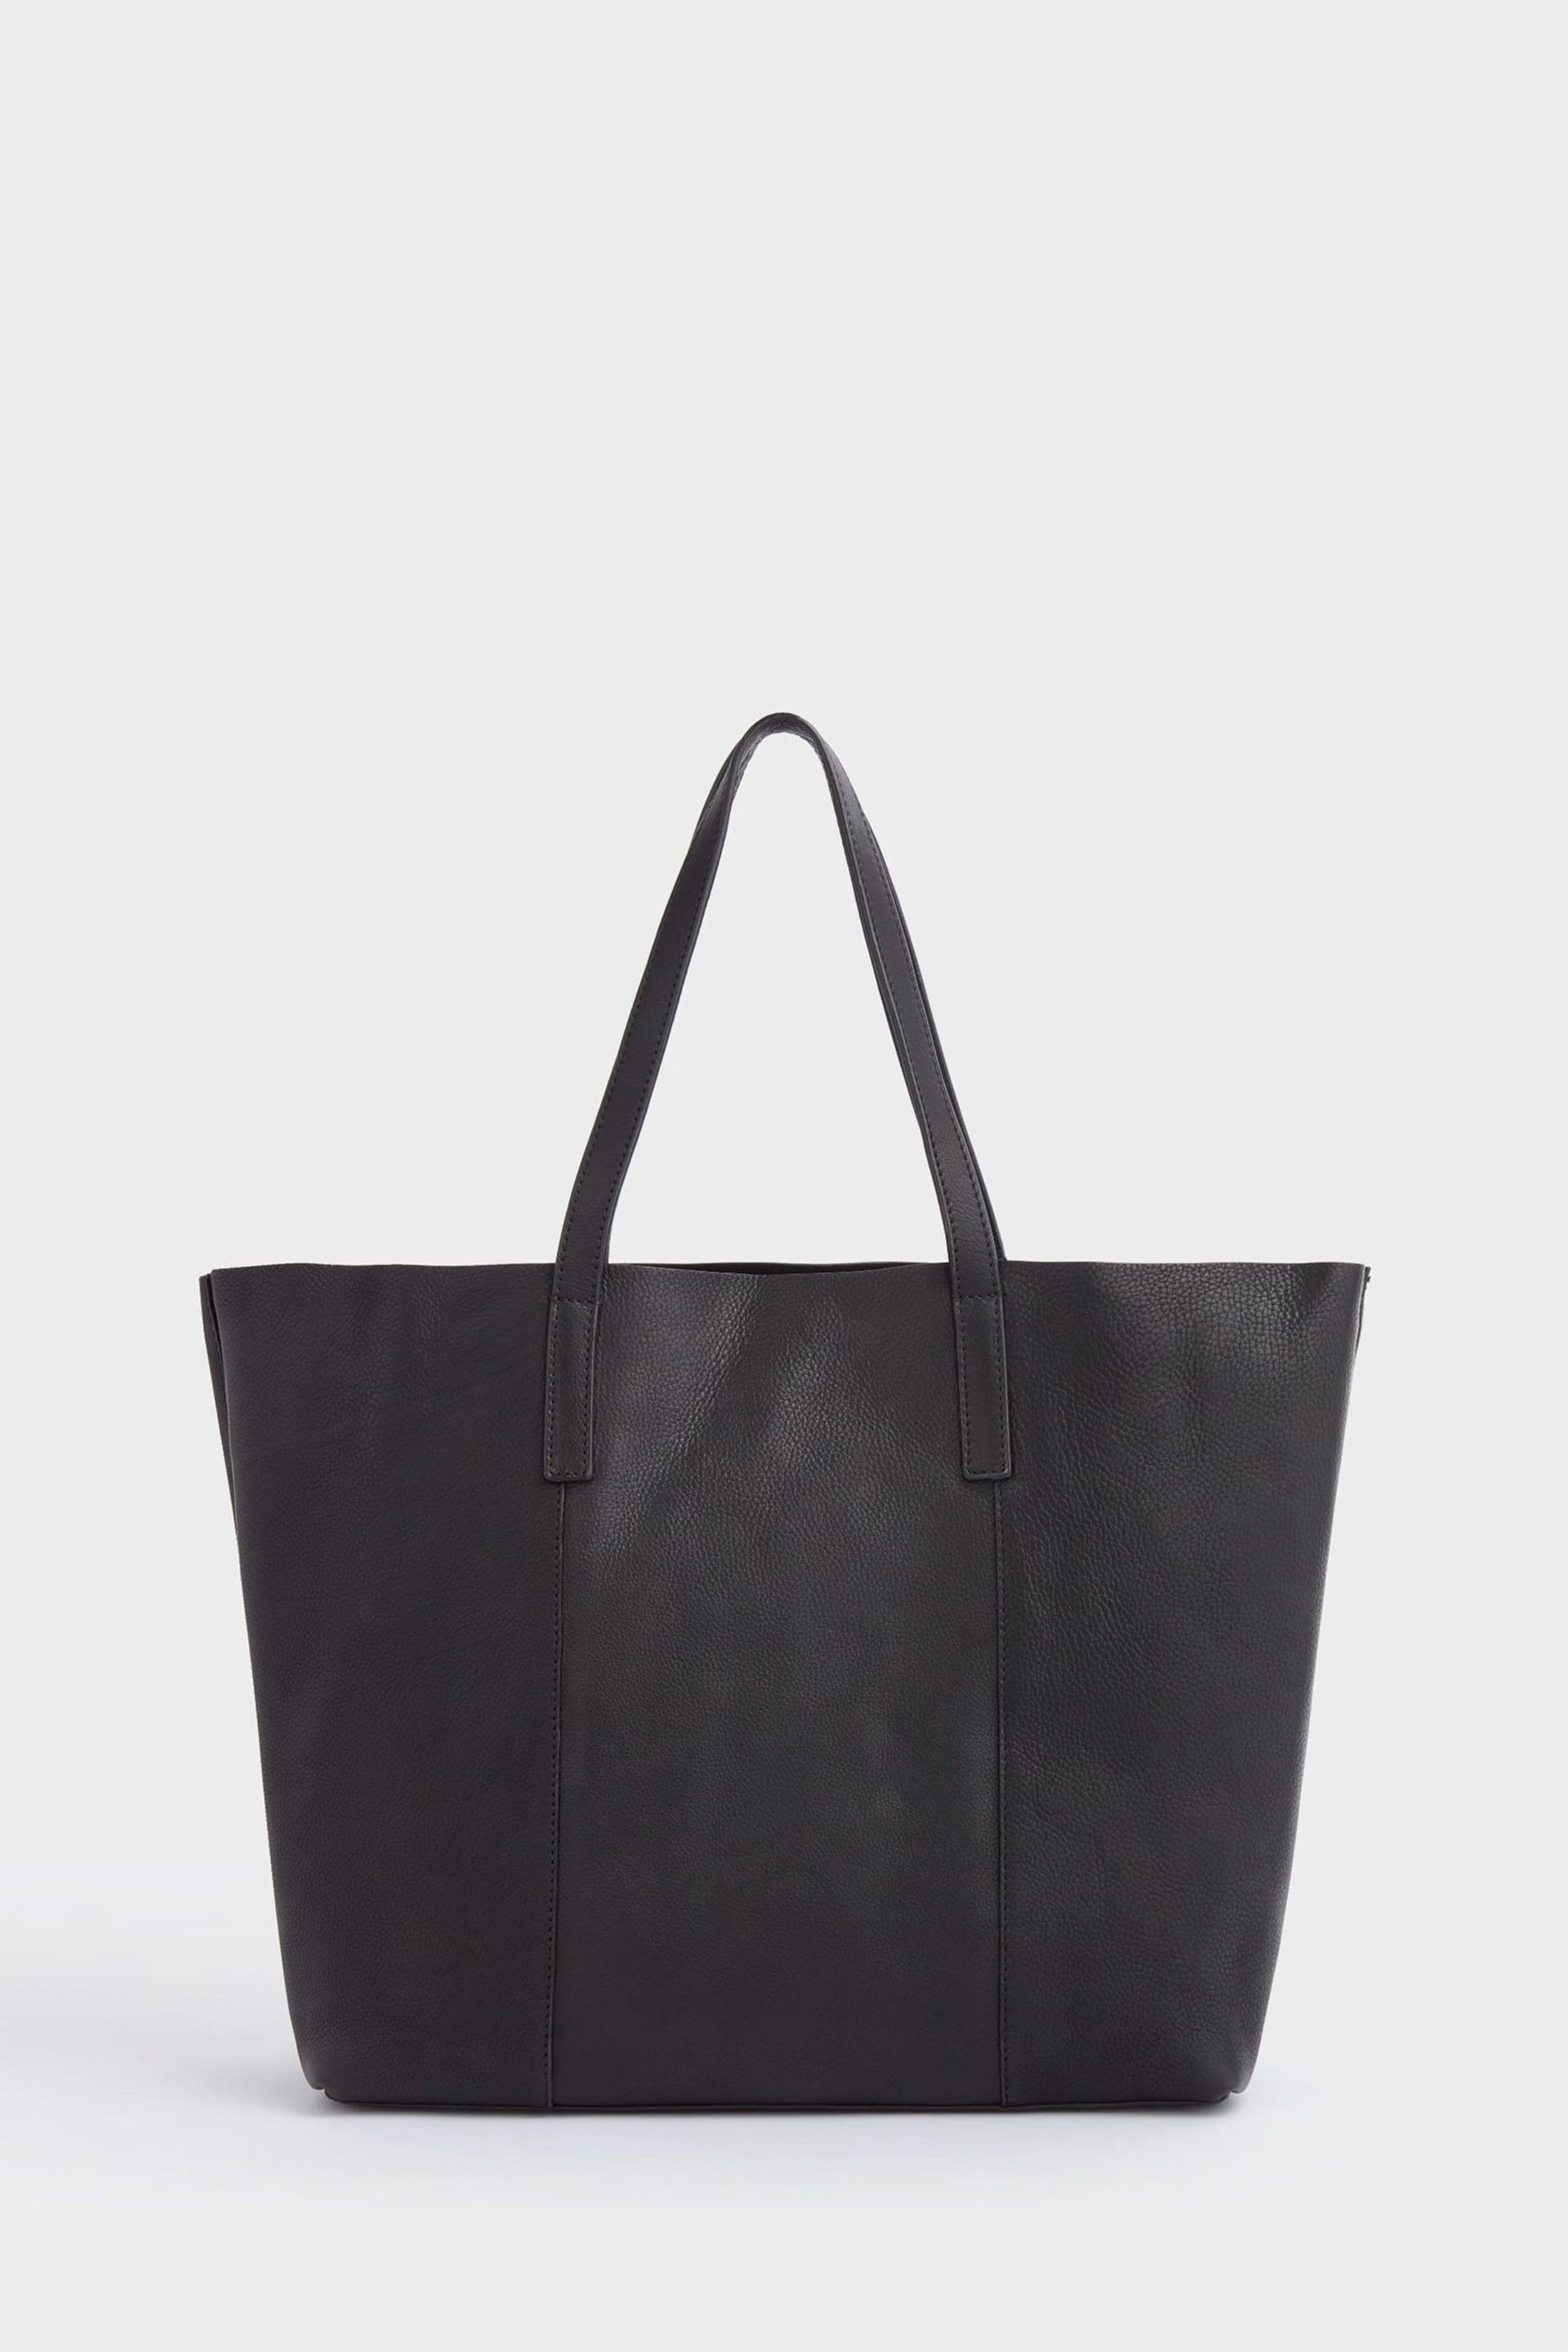 OSPREY LONDON The Vintage Leather Santa Fe Black Tote Bag - Image 2 of 6